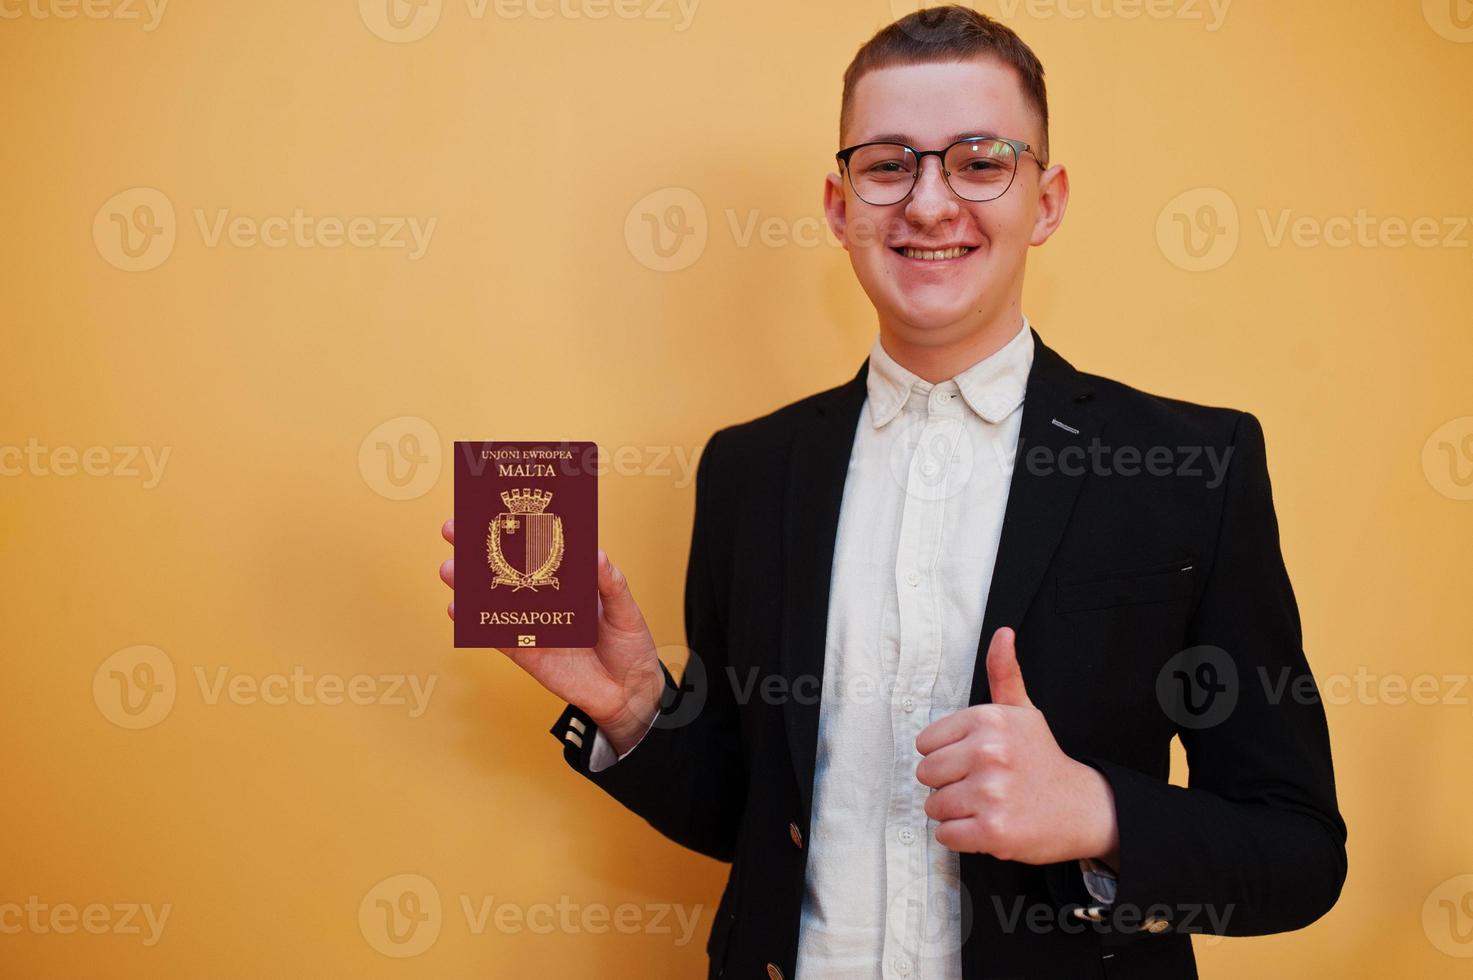 jong knap Mens Holding republiek van Malta paspoort ID kaart over- geel achtergrond, gelukkig en tonen duim omhoog. reizen naar Europa land concept. foto